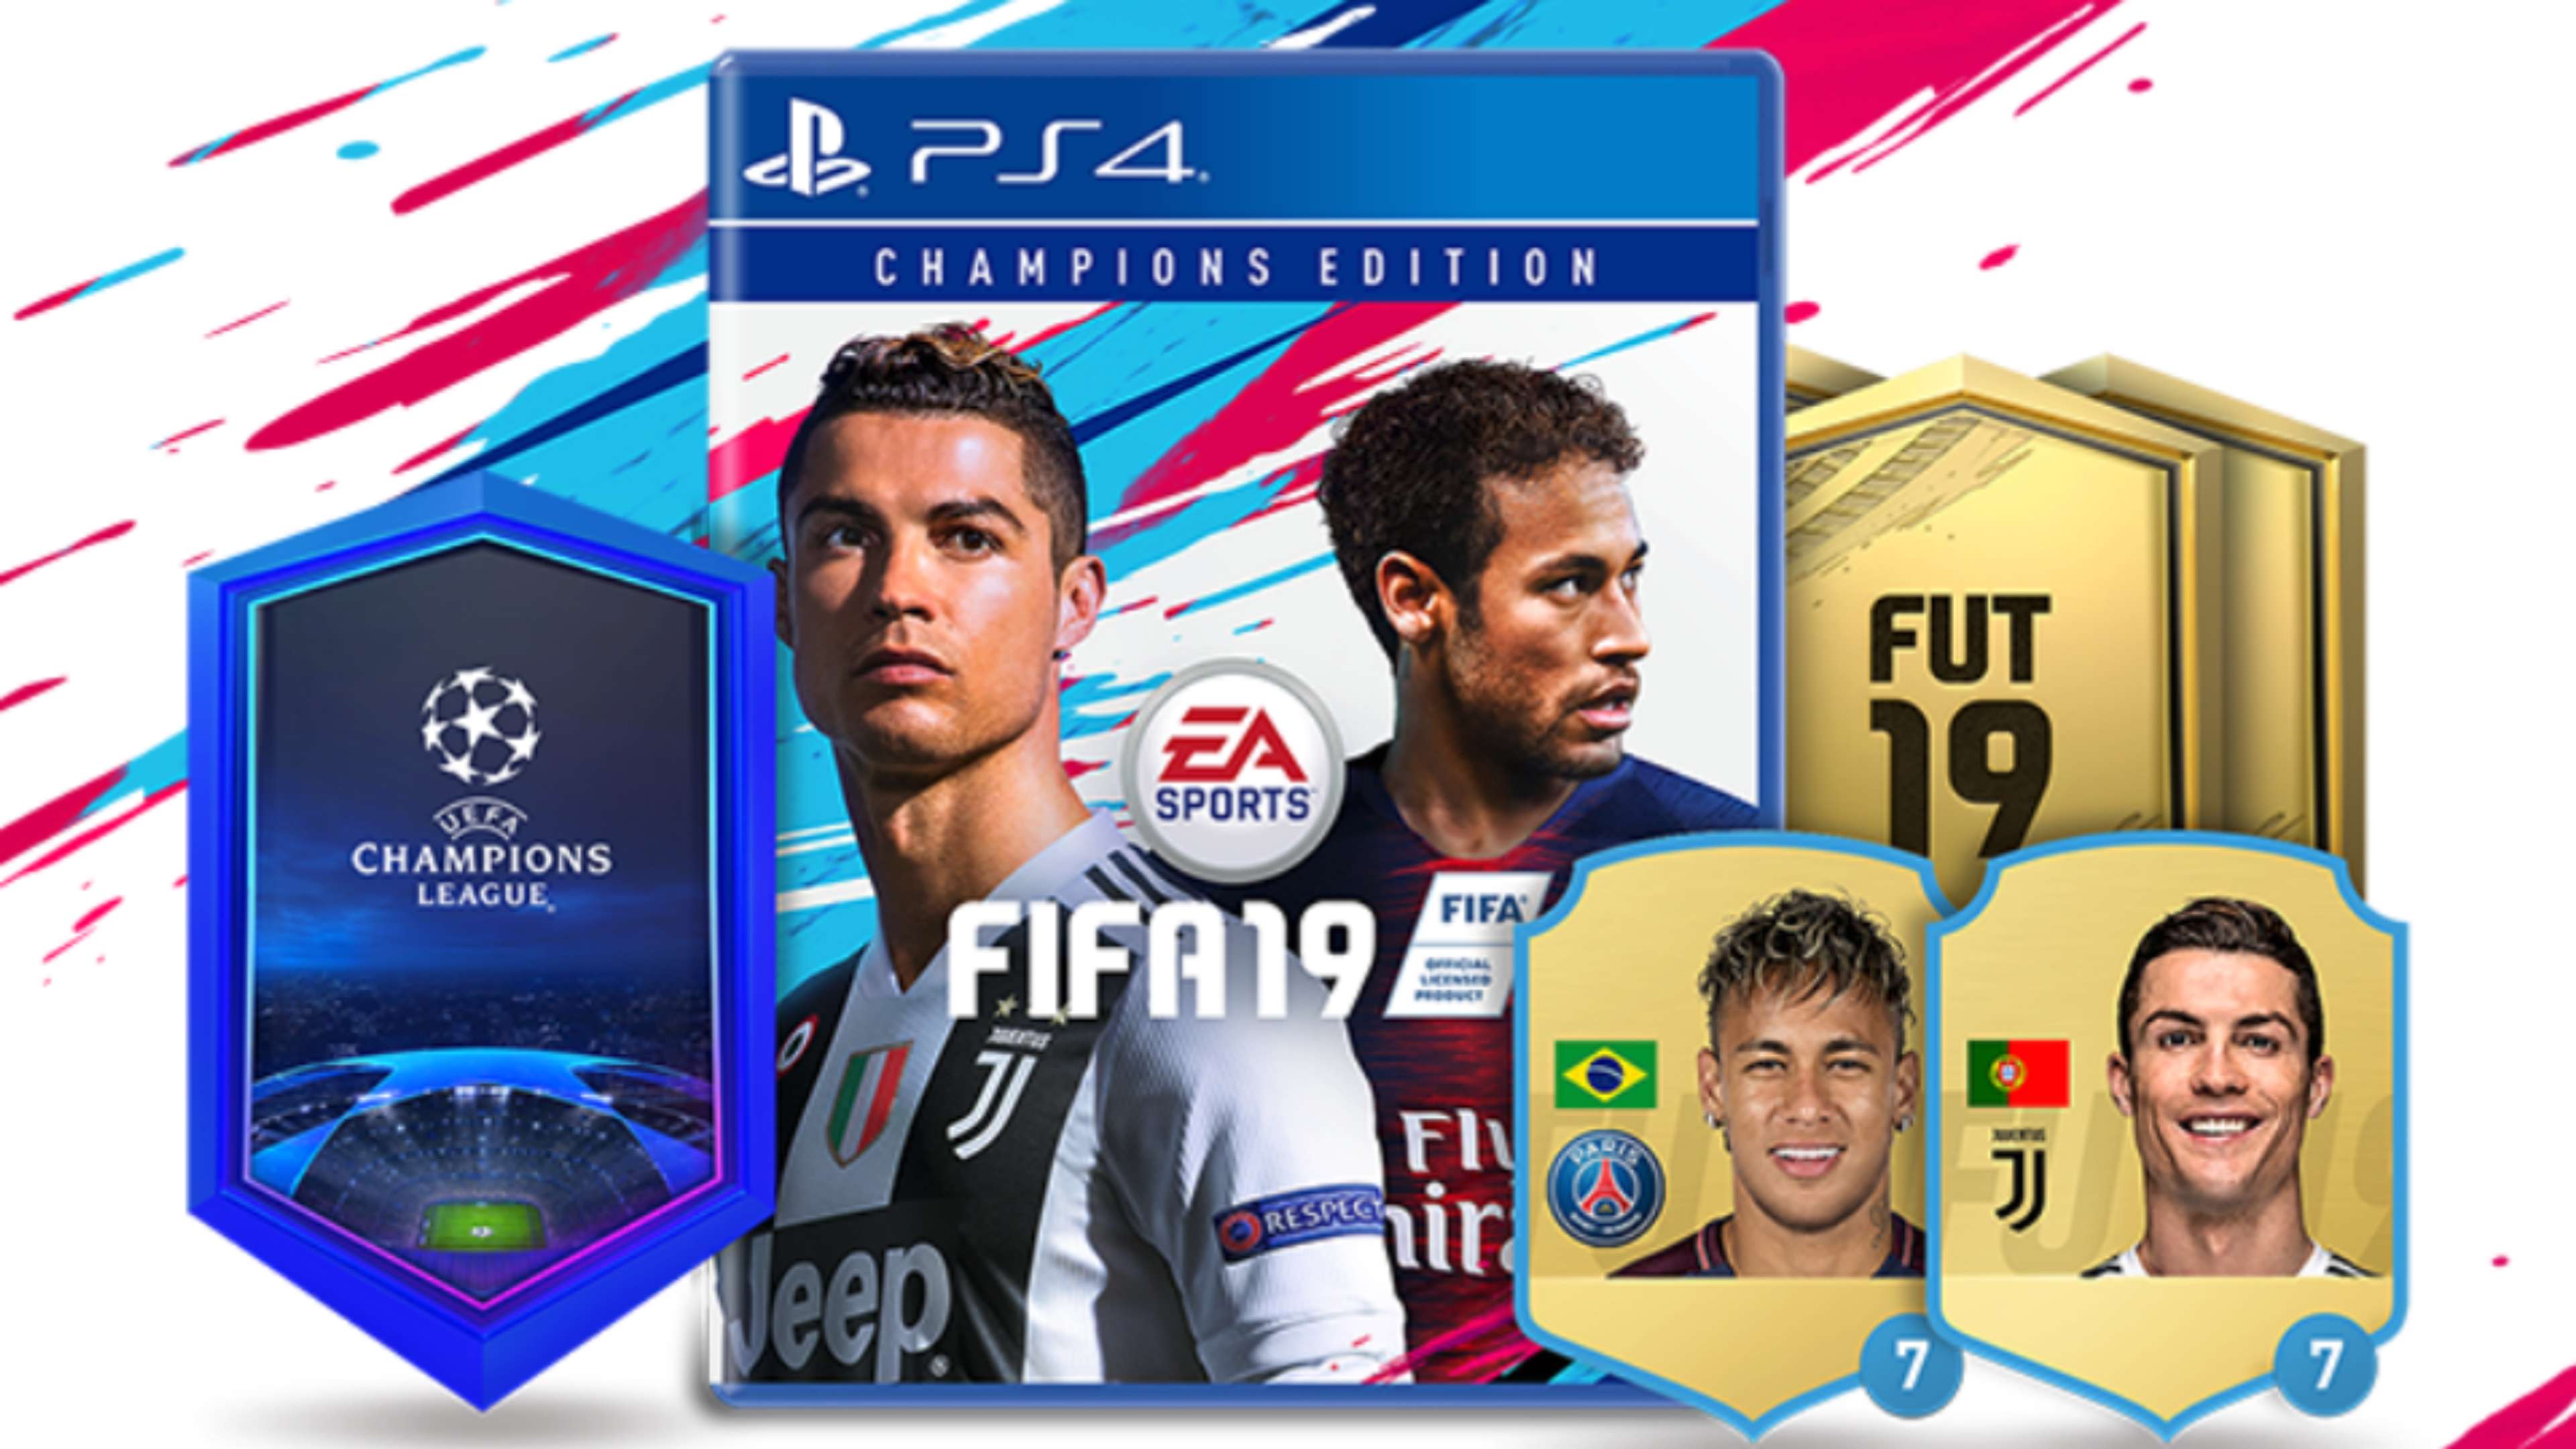 FIFA 19 Cover